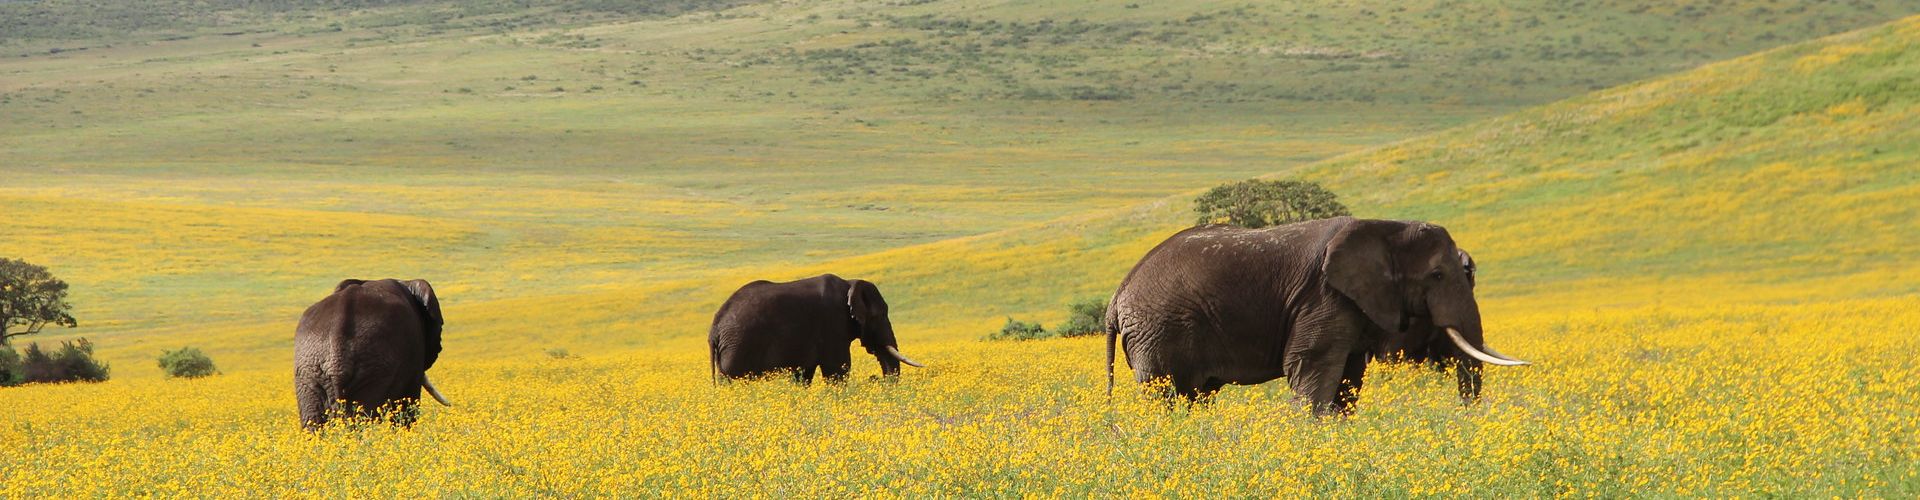 Il nostro Safari di 4 giorni in Tanzania vi porta a conoscere gli elefanti della Ngorongoro Conservation Area